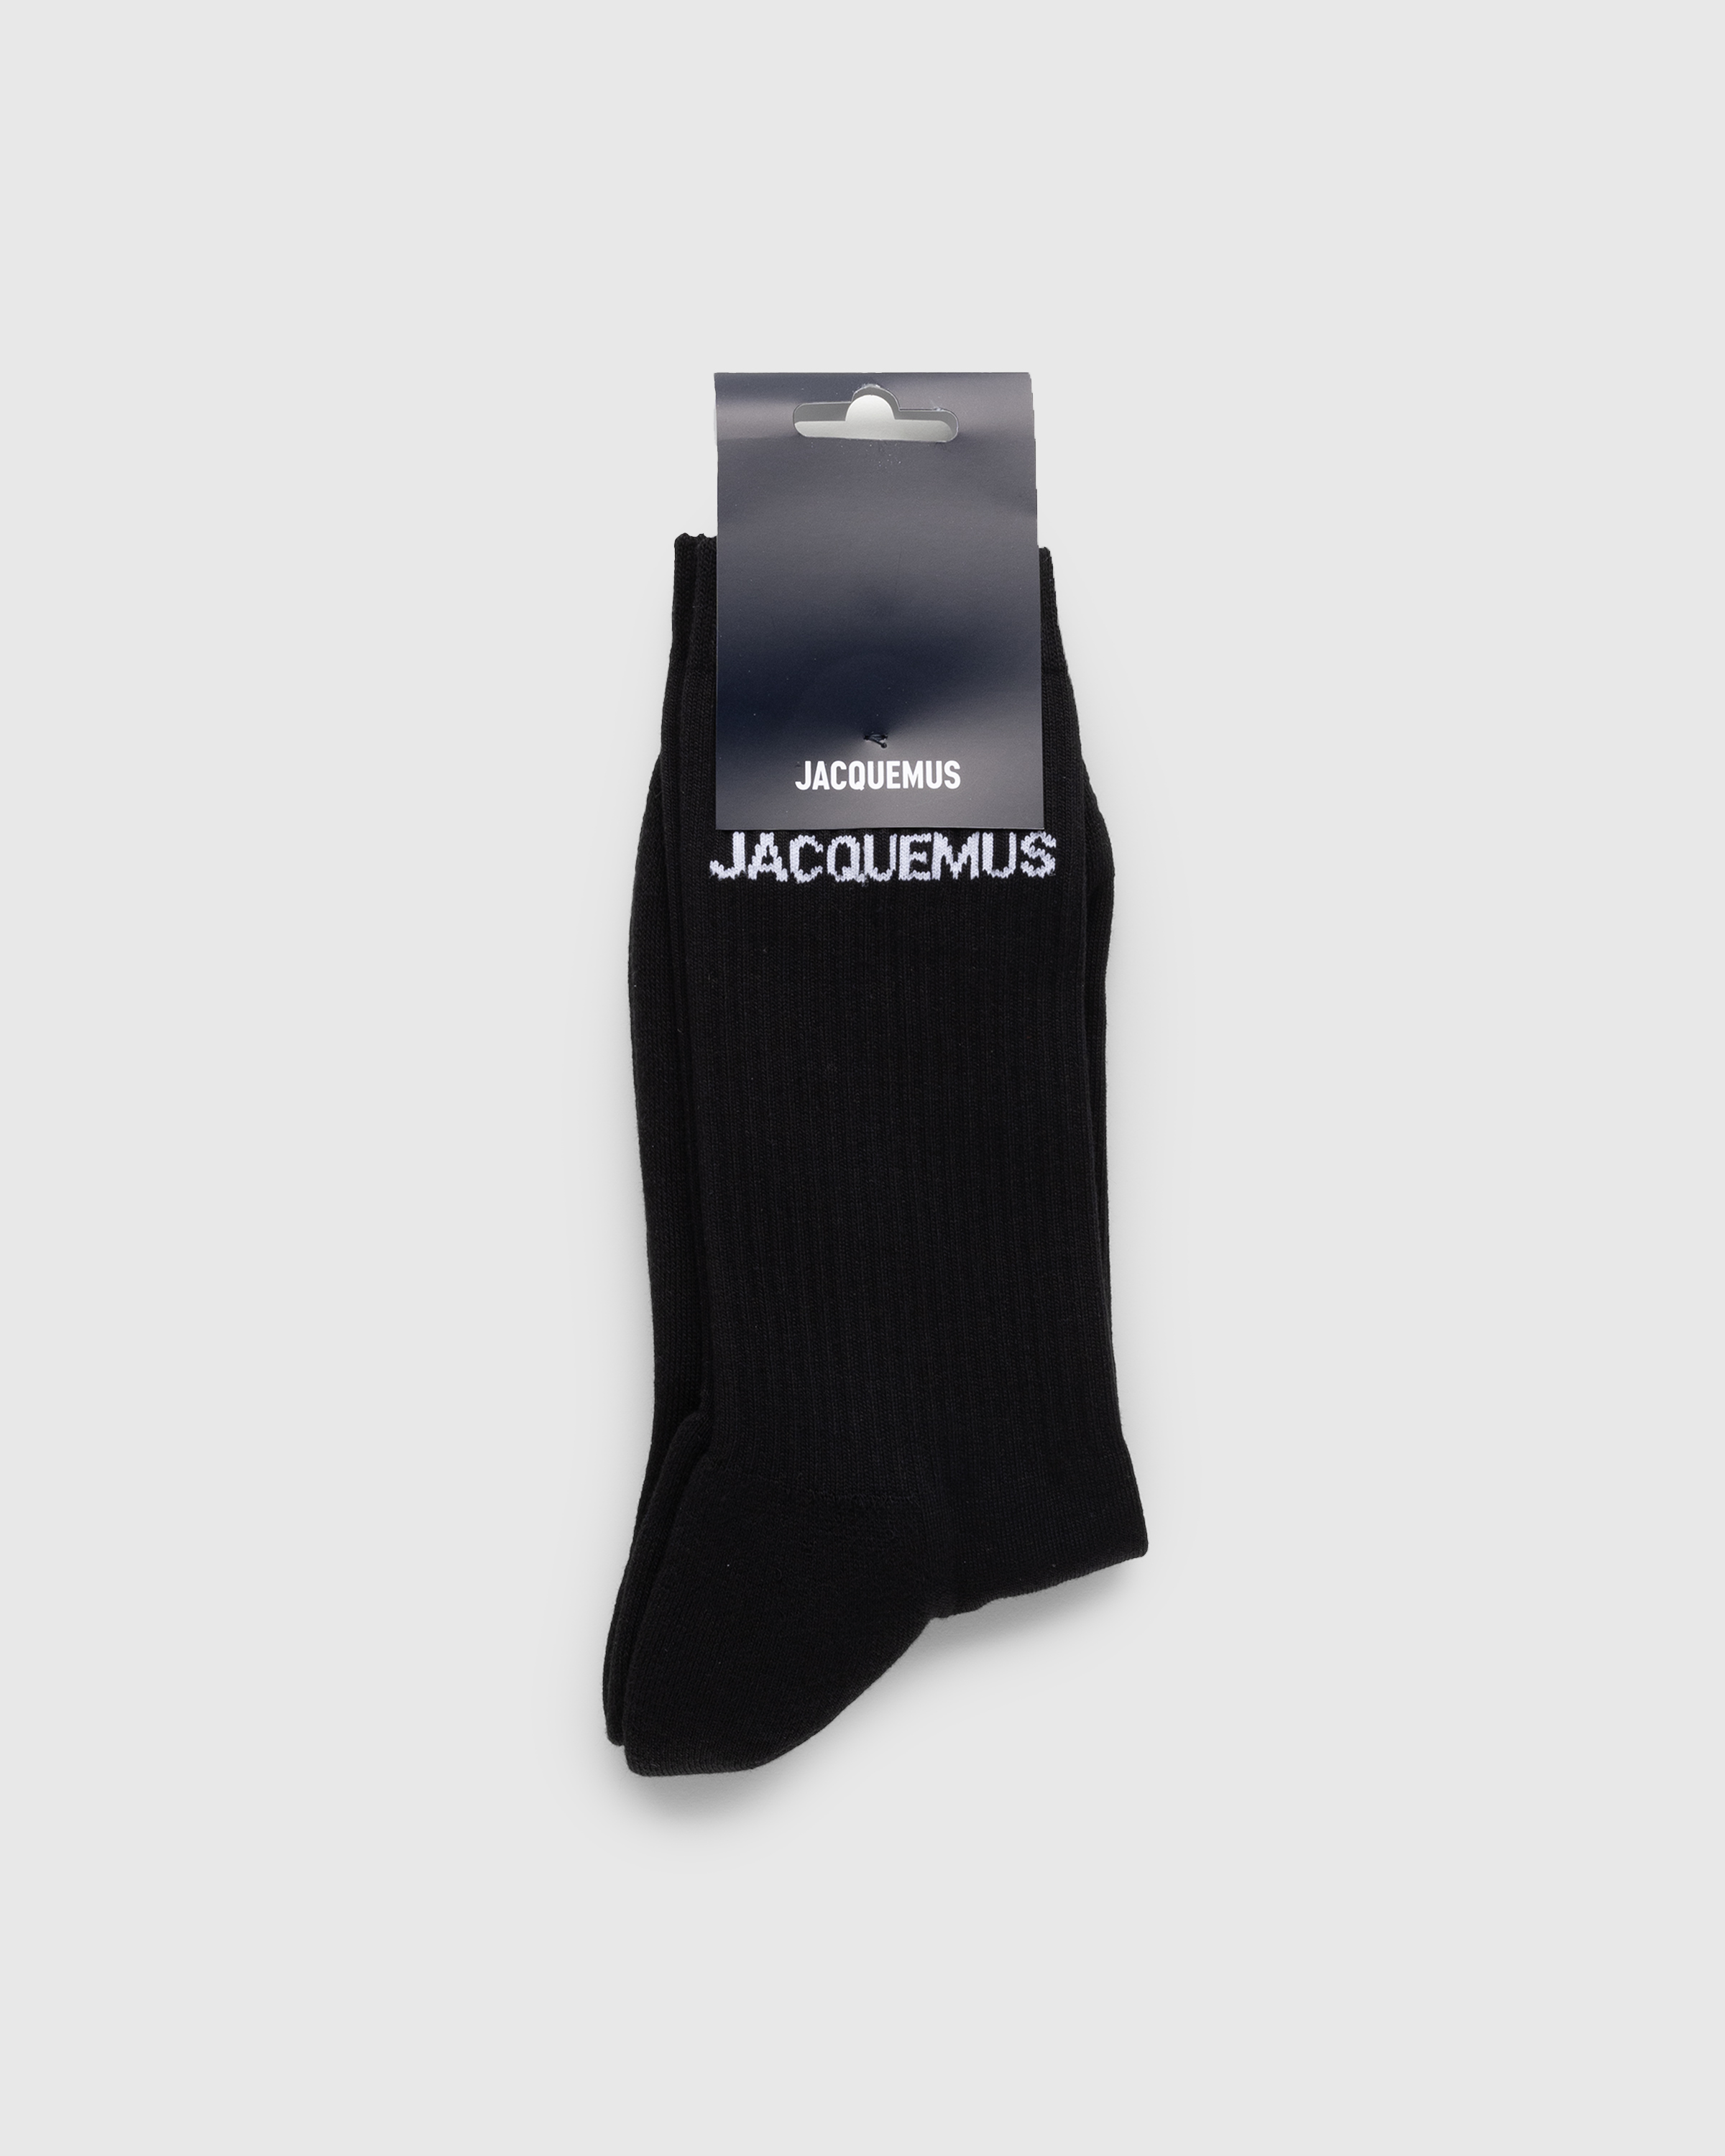 JACQUEMUS – Les Chaussettes Black - Ankle - Black - Image 3